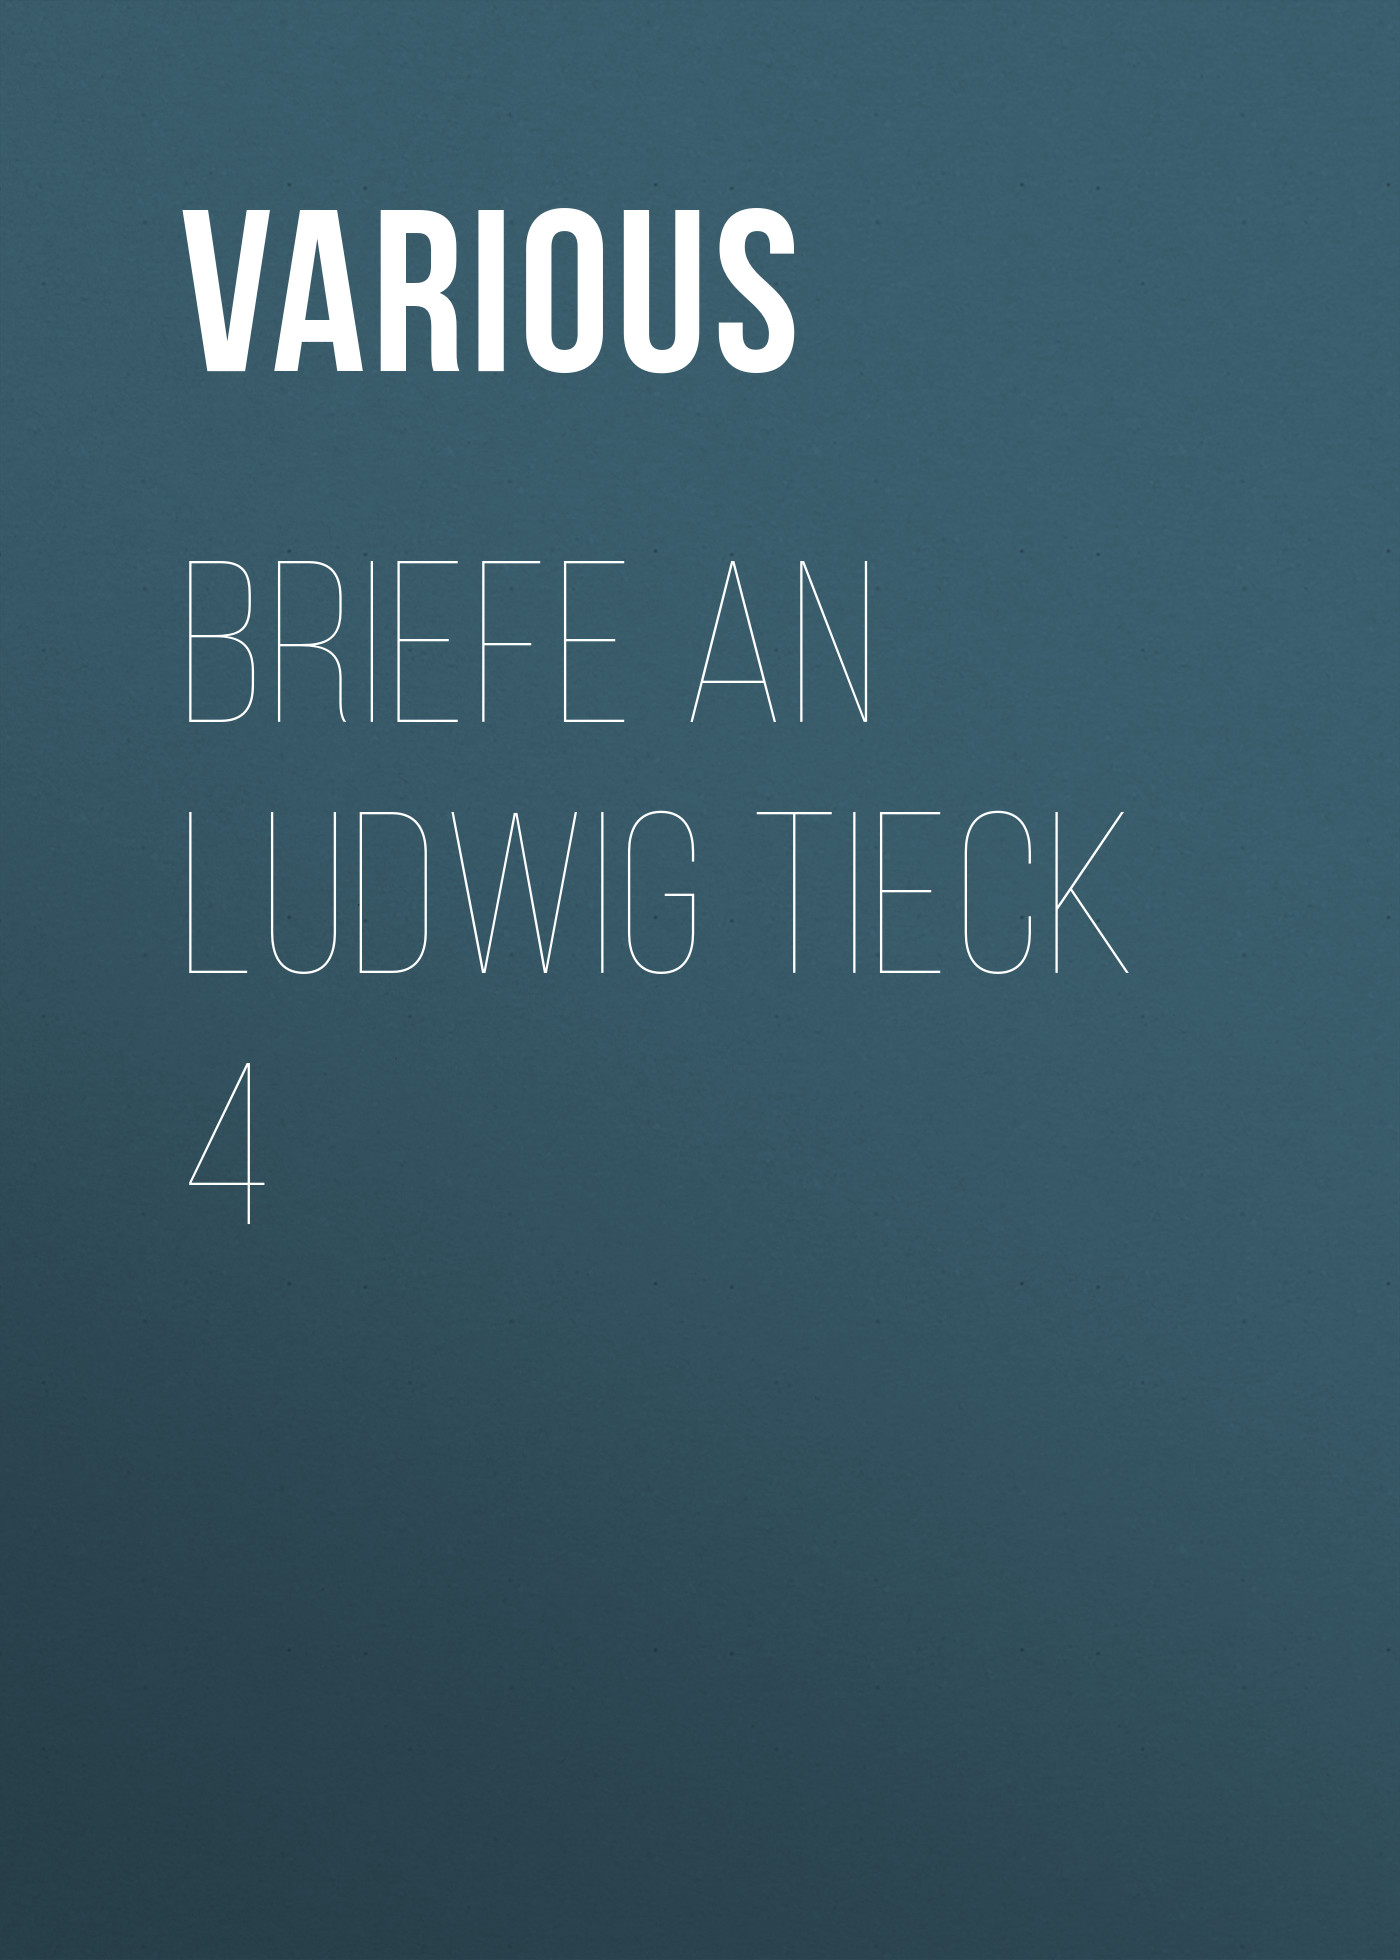 Книга Briefe an Ludwig Tieck 4 из серии , созданная  Various, может относится к жанру Зарубежная классика. Стоимость электронной книги Briefe an Ludwig Tieck 4 с идентификатором 25571143 составляет 0 руб.